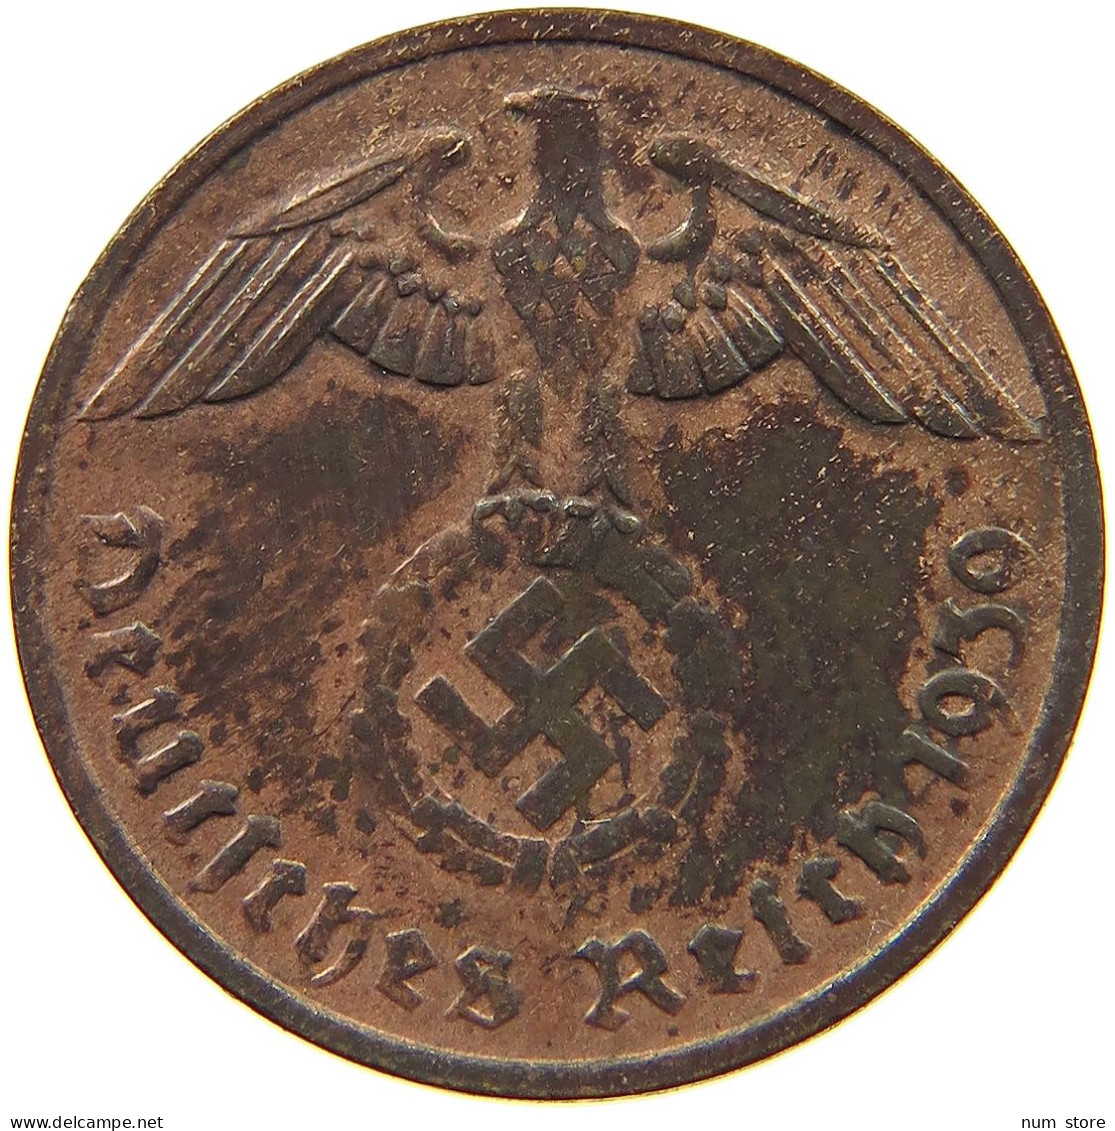 GERMANY 2 PFENNIG 1939 G #c013 0307 - 2 Reichspfennig